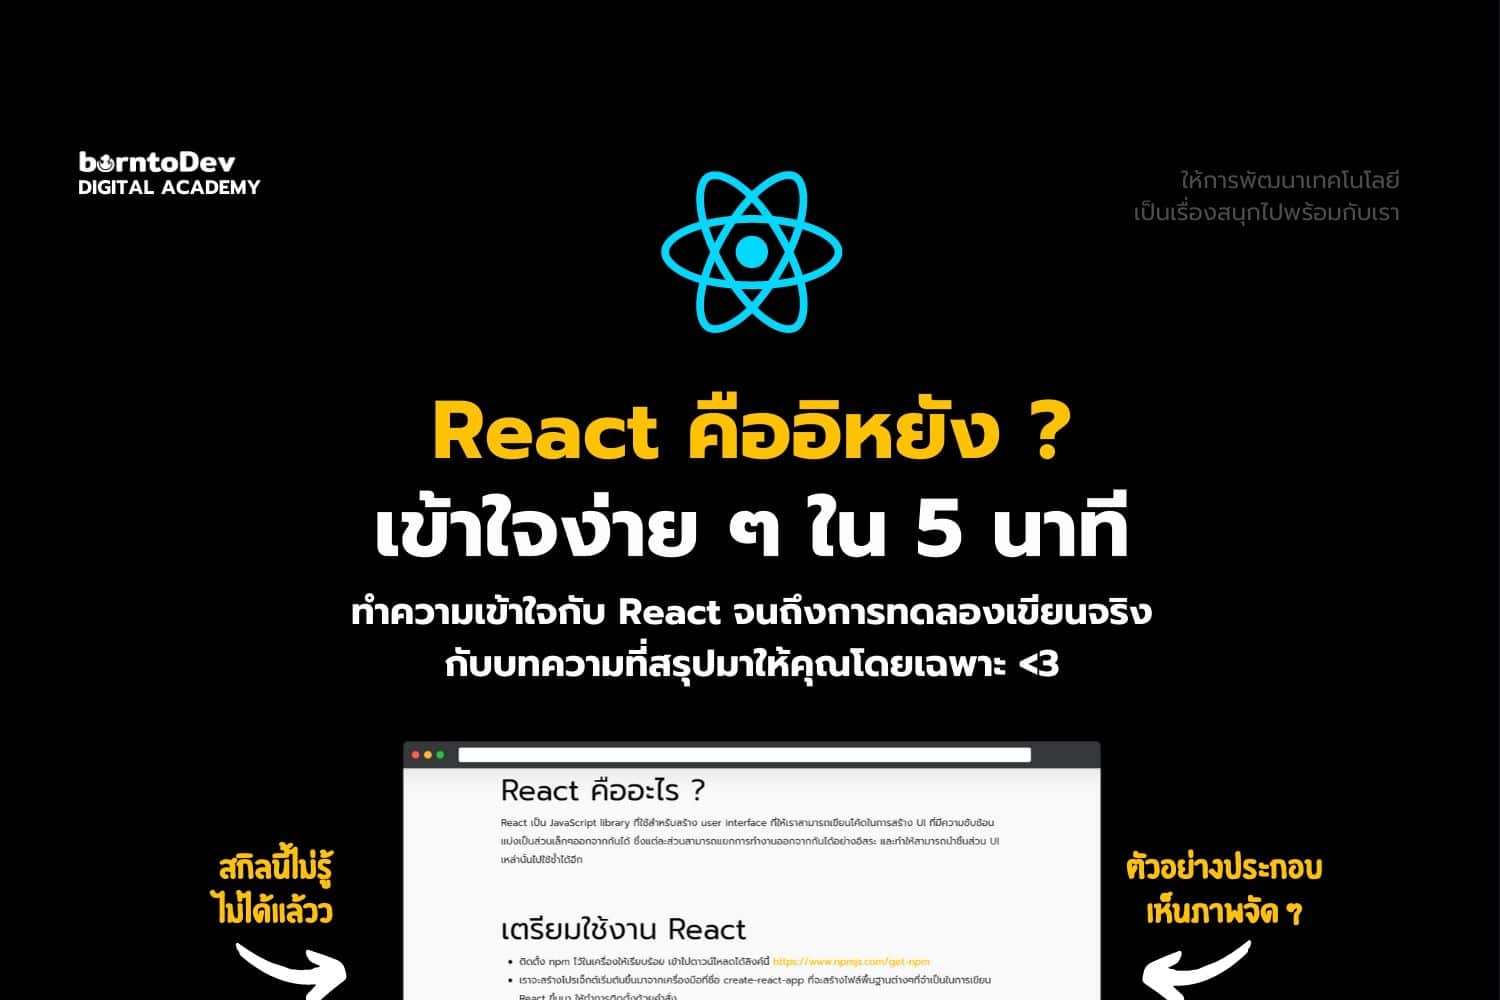 React 101 – Borntodev เริ่มต้นเรียน เขียนโปรแกรม ขั้นเทพ !